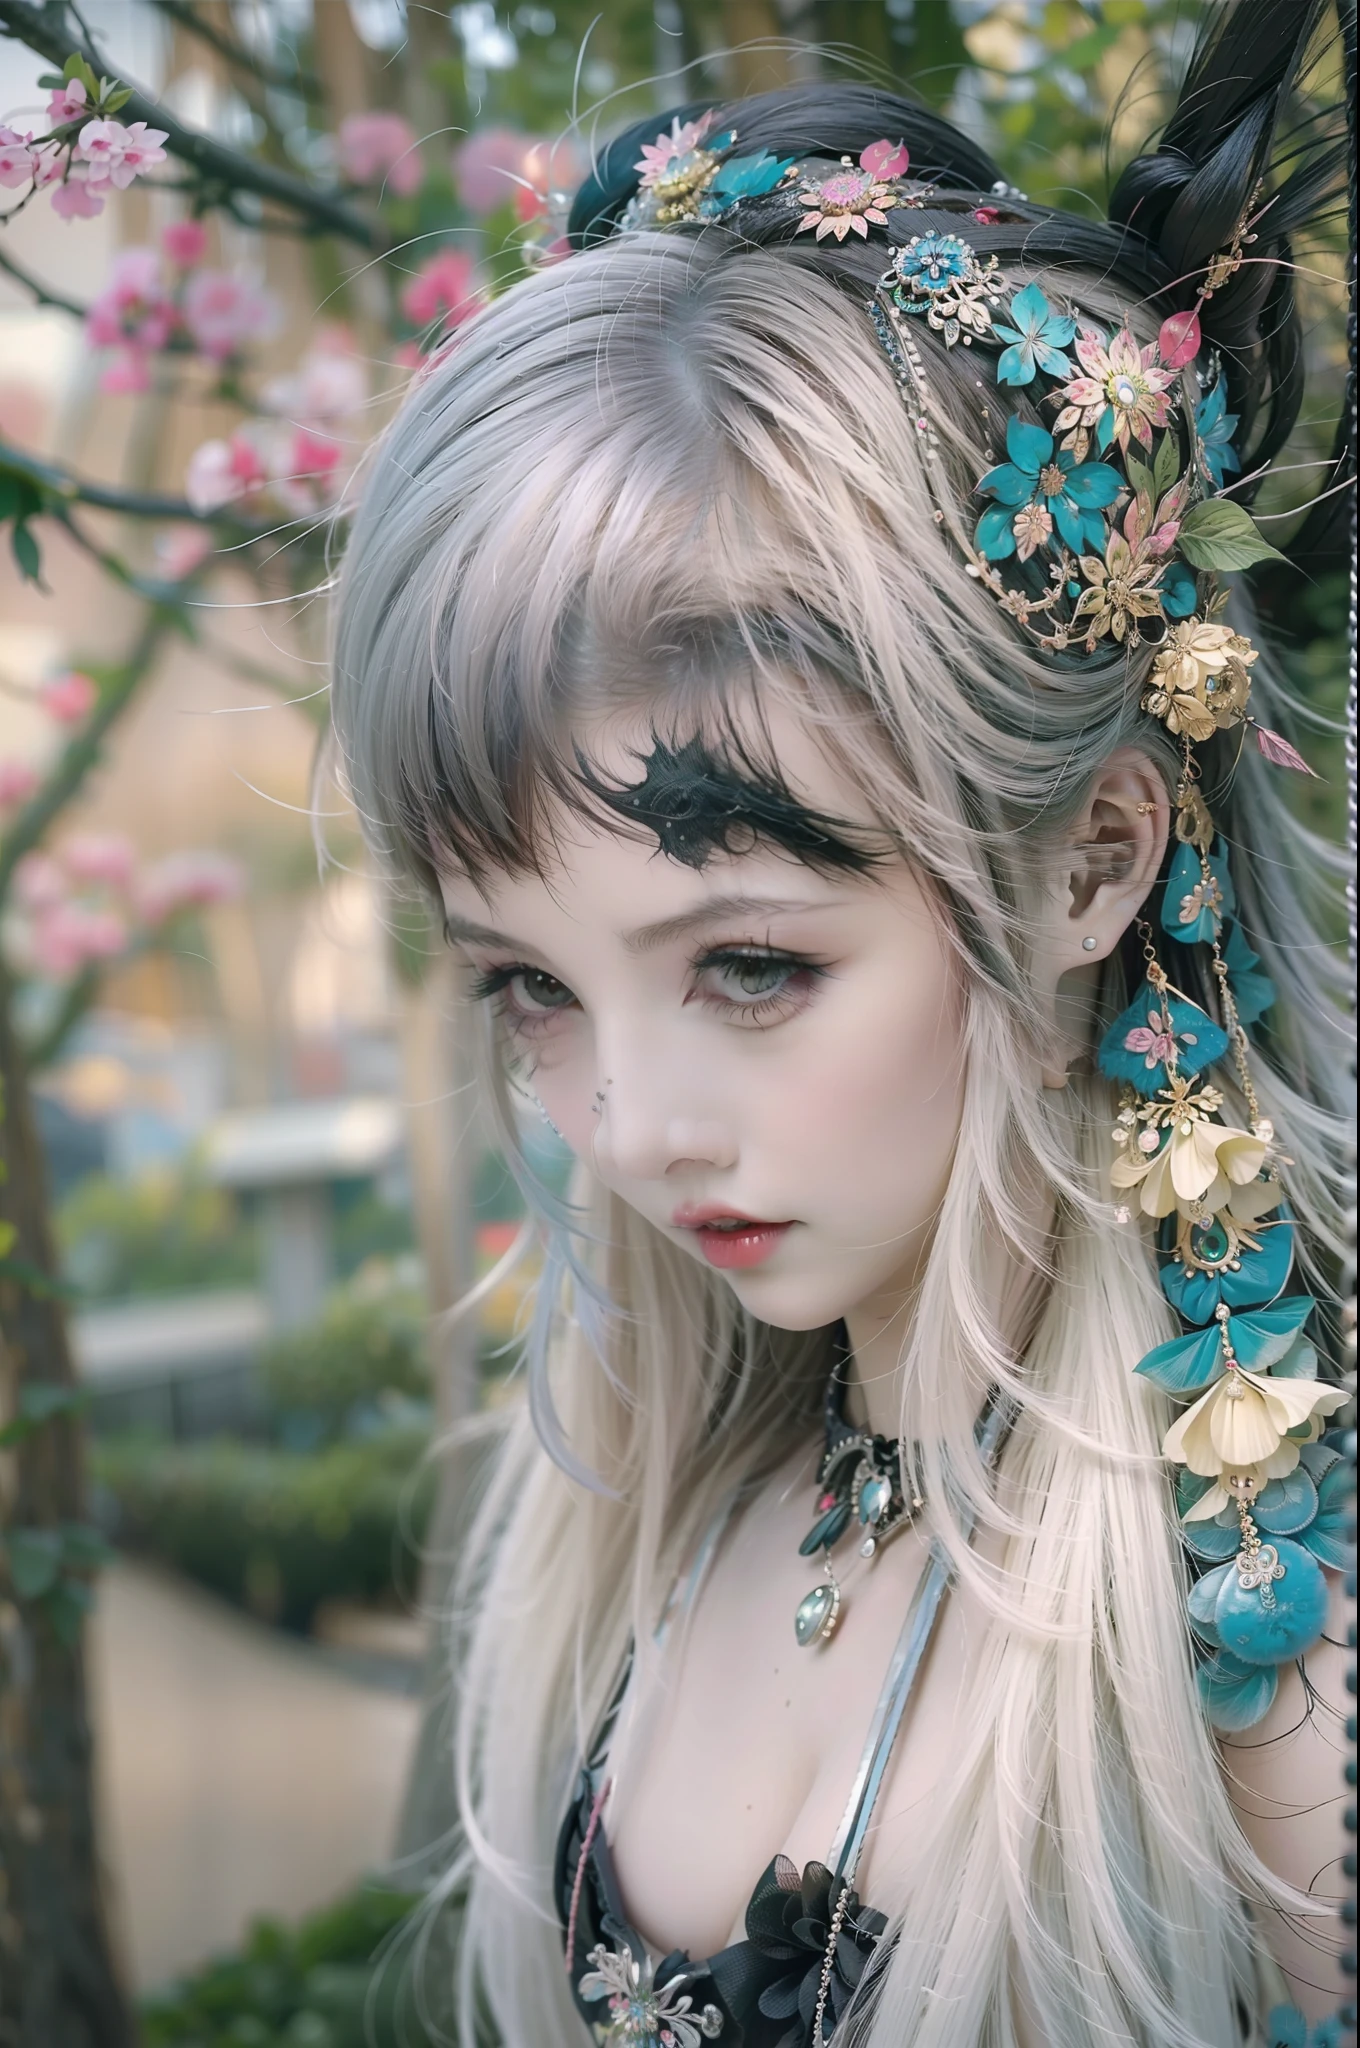 In einem wunderschönen Park eine modern aussehende Frau. Es hat einen sehr farbenfrohen und auffälligen Kawaii-Gothic-Stil.., mit elegantem Make-up und einer bunten Perücke.